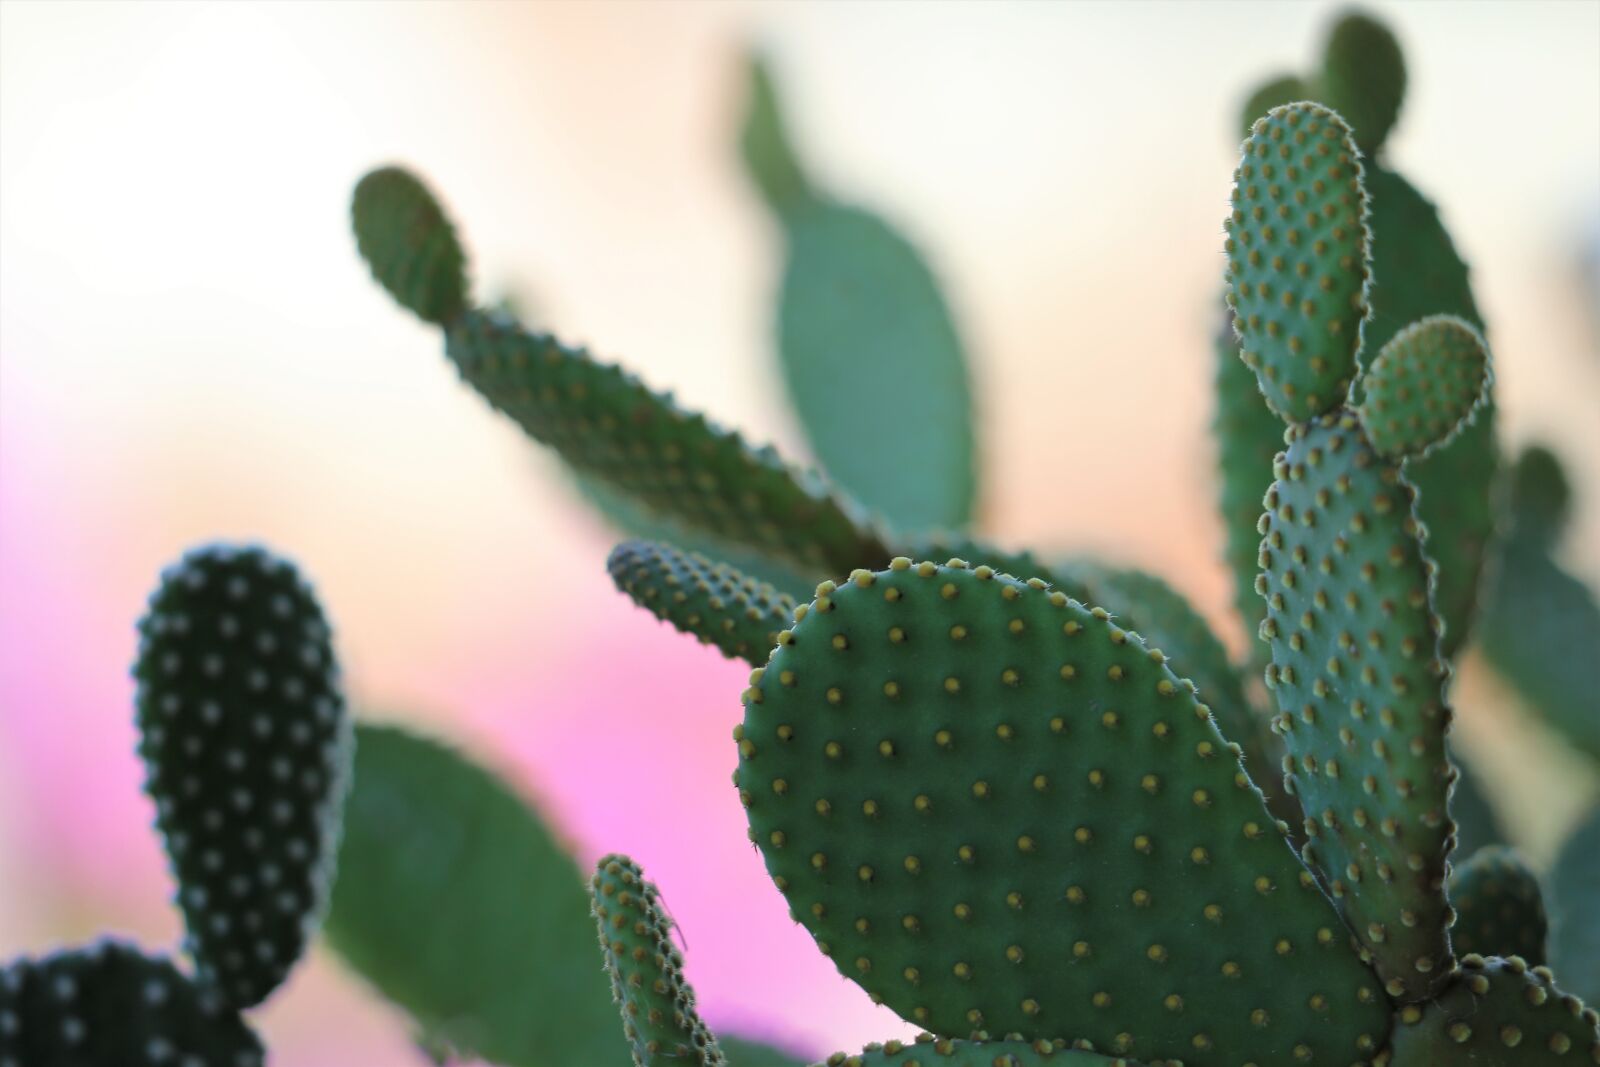 Canon EOS 6D sample photo. Cactus, green, prickly photography